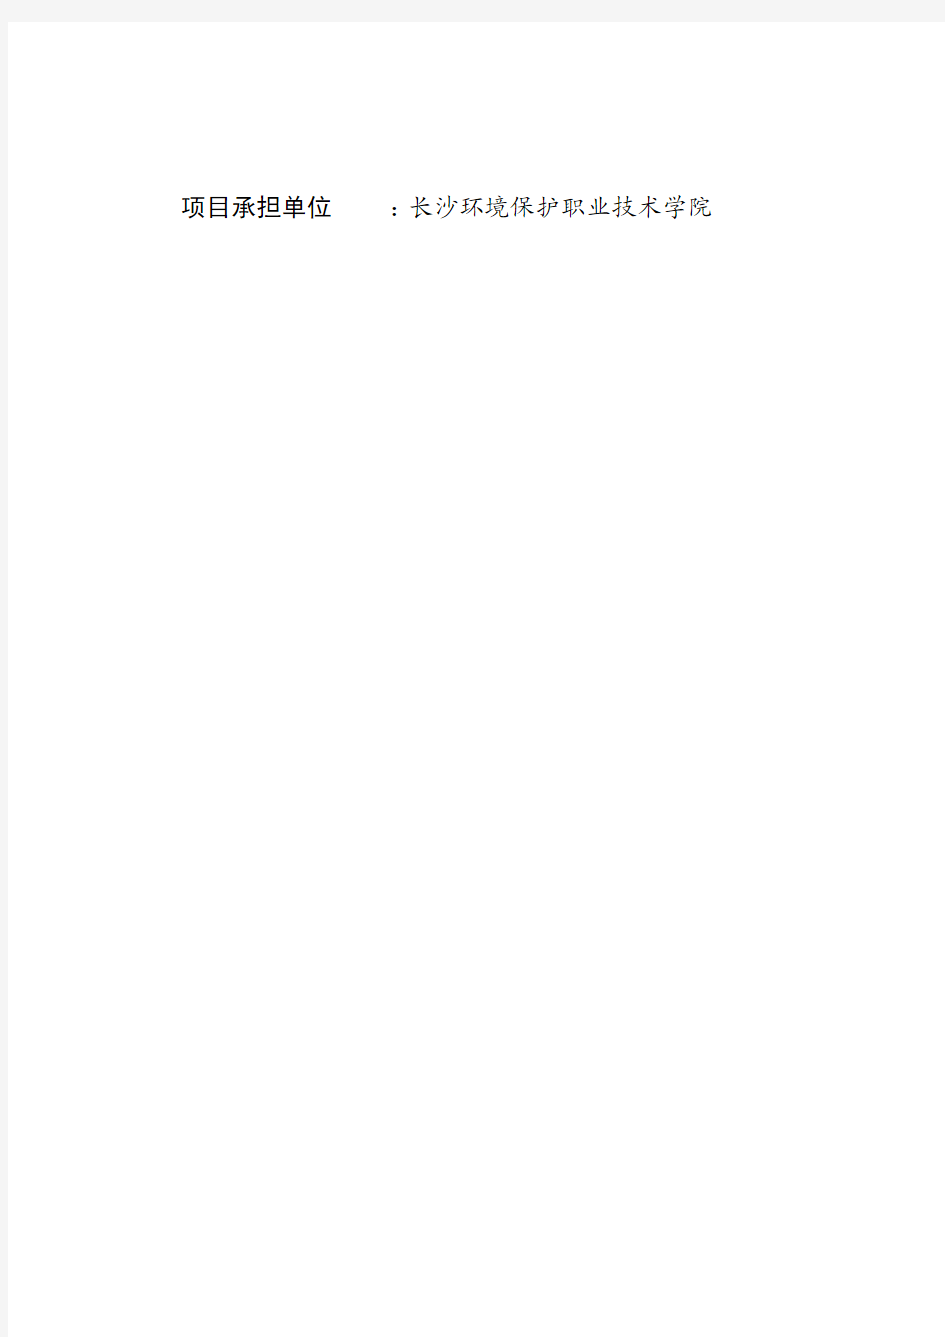 湖南环保科技产业园项目环境影响报告书(报批稿)